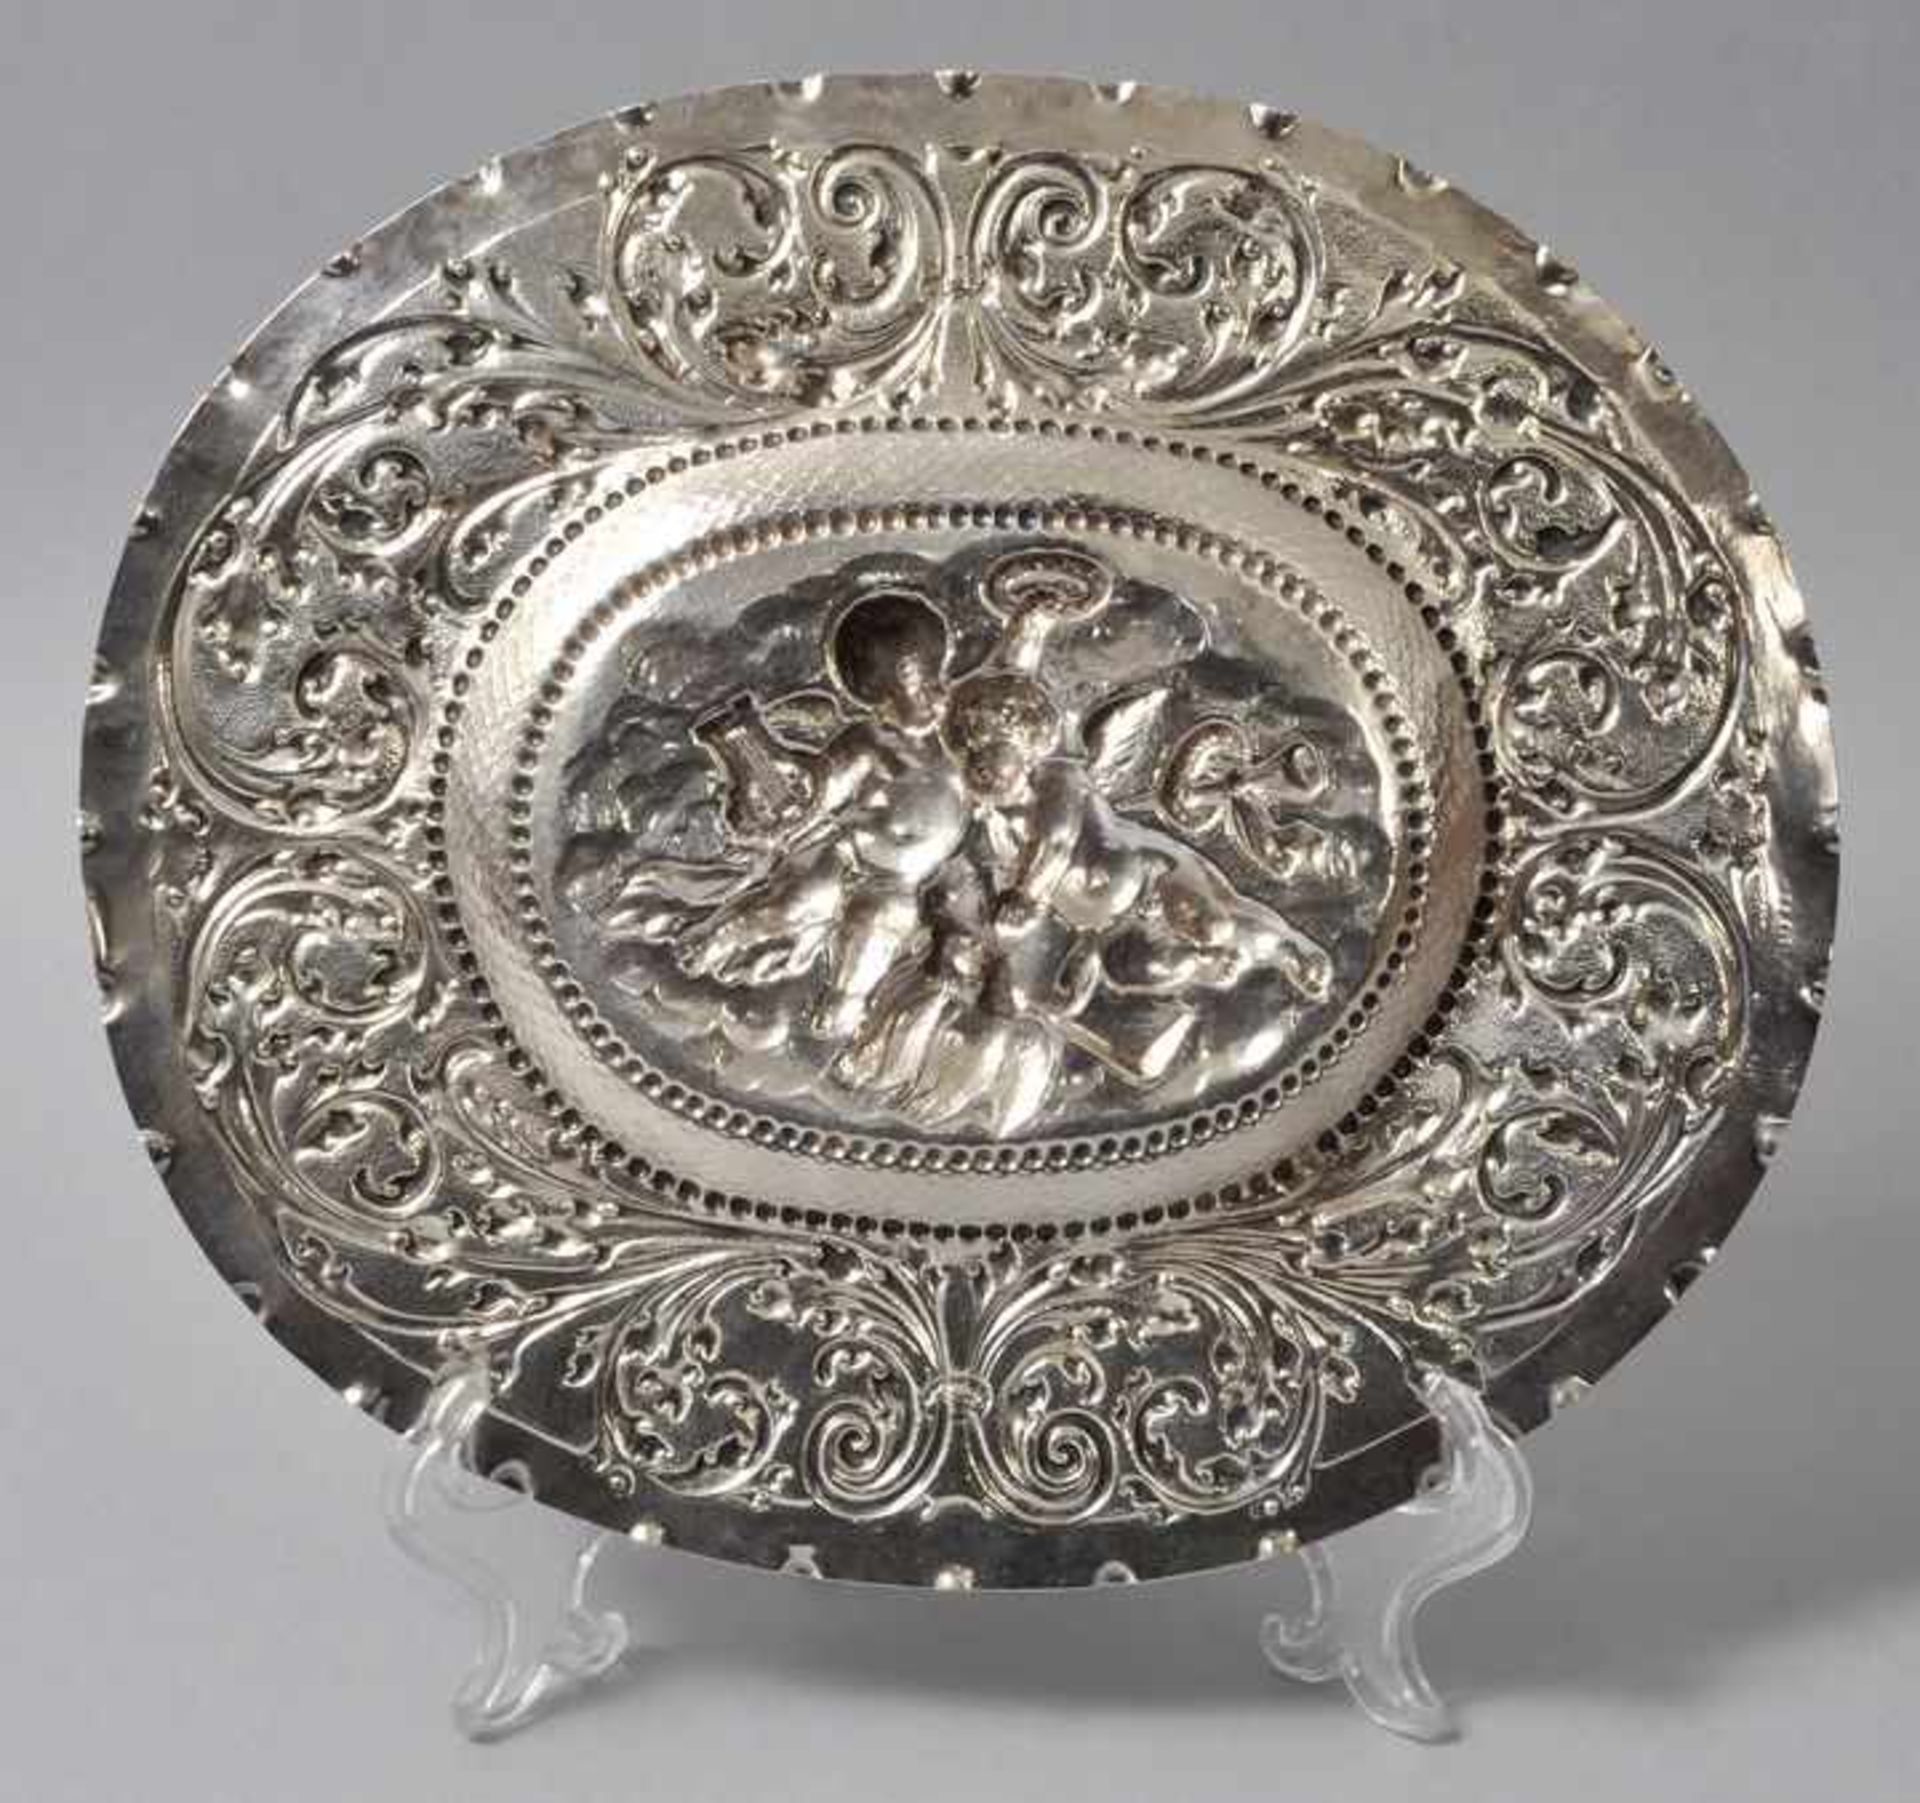 Schauplatte, Augsburg, fr. 18. Jh.Silber, getrieben, punziert. Ovale Form mit gewelltem Rand. Die - Image 2 of 2